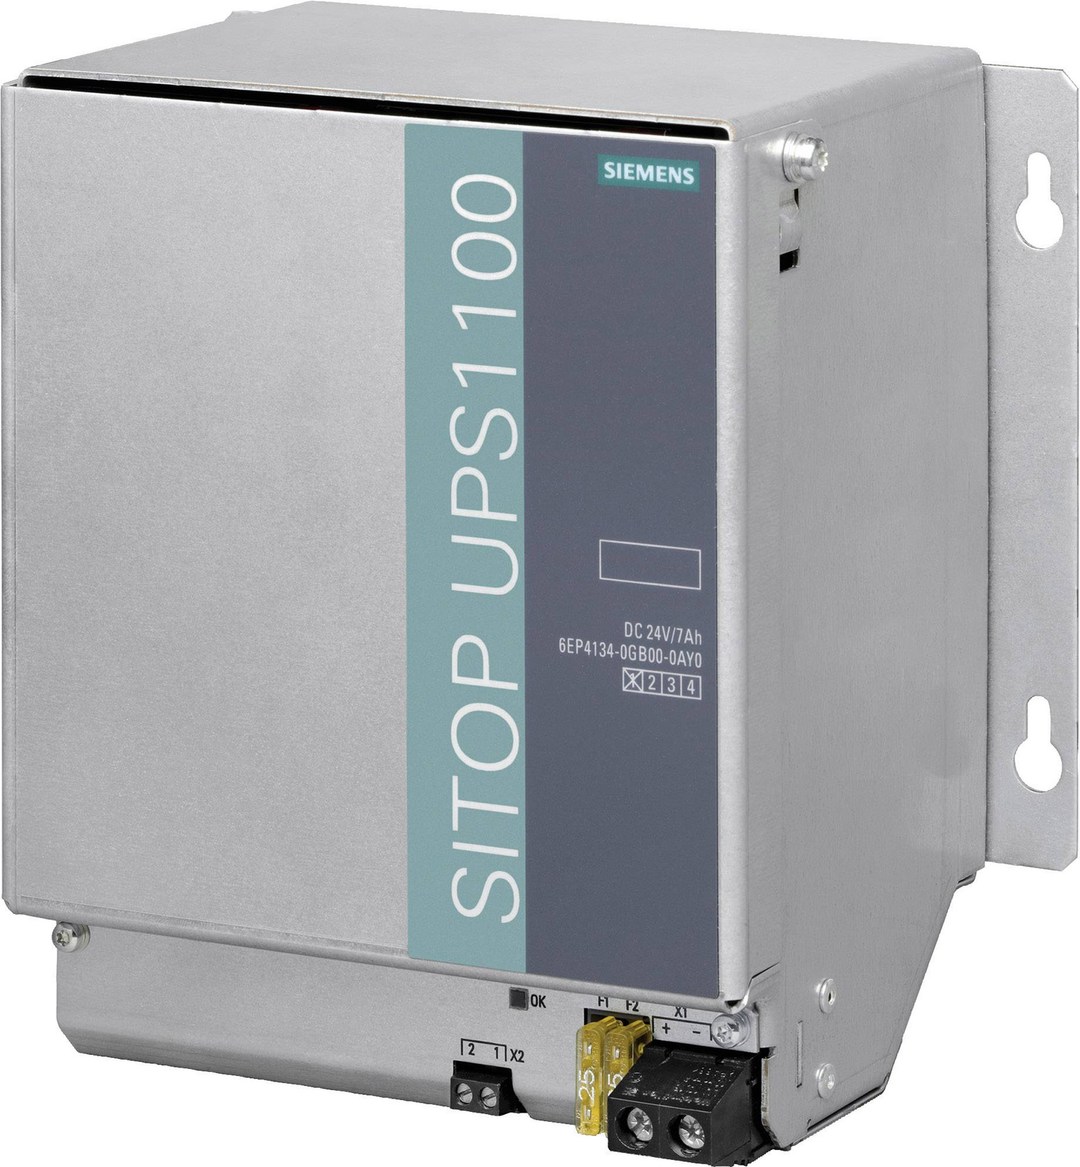 Siemens SITOP UPS1100 Energiespeicher Energiegerät Gerät Energiespeichergerät